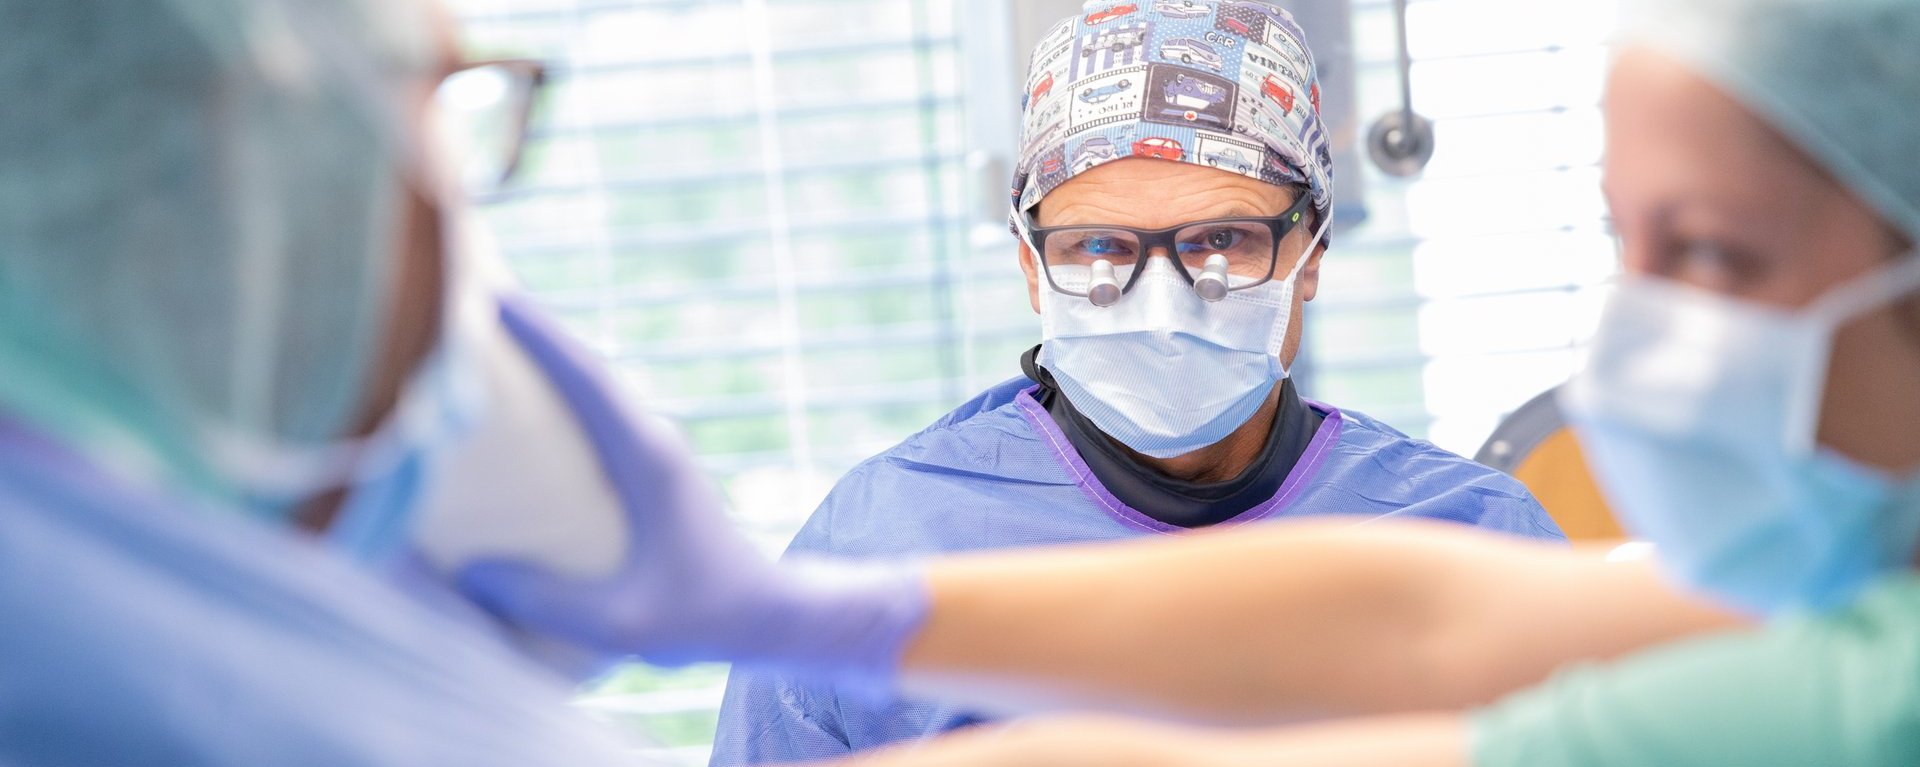 Dr. med. Joachim Rogg, Chefarzt des Fachbereichs Gefäßchirurgie an der Klinik Immenstadt, blickt während einer Operation konzentriert auf einen Monitor